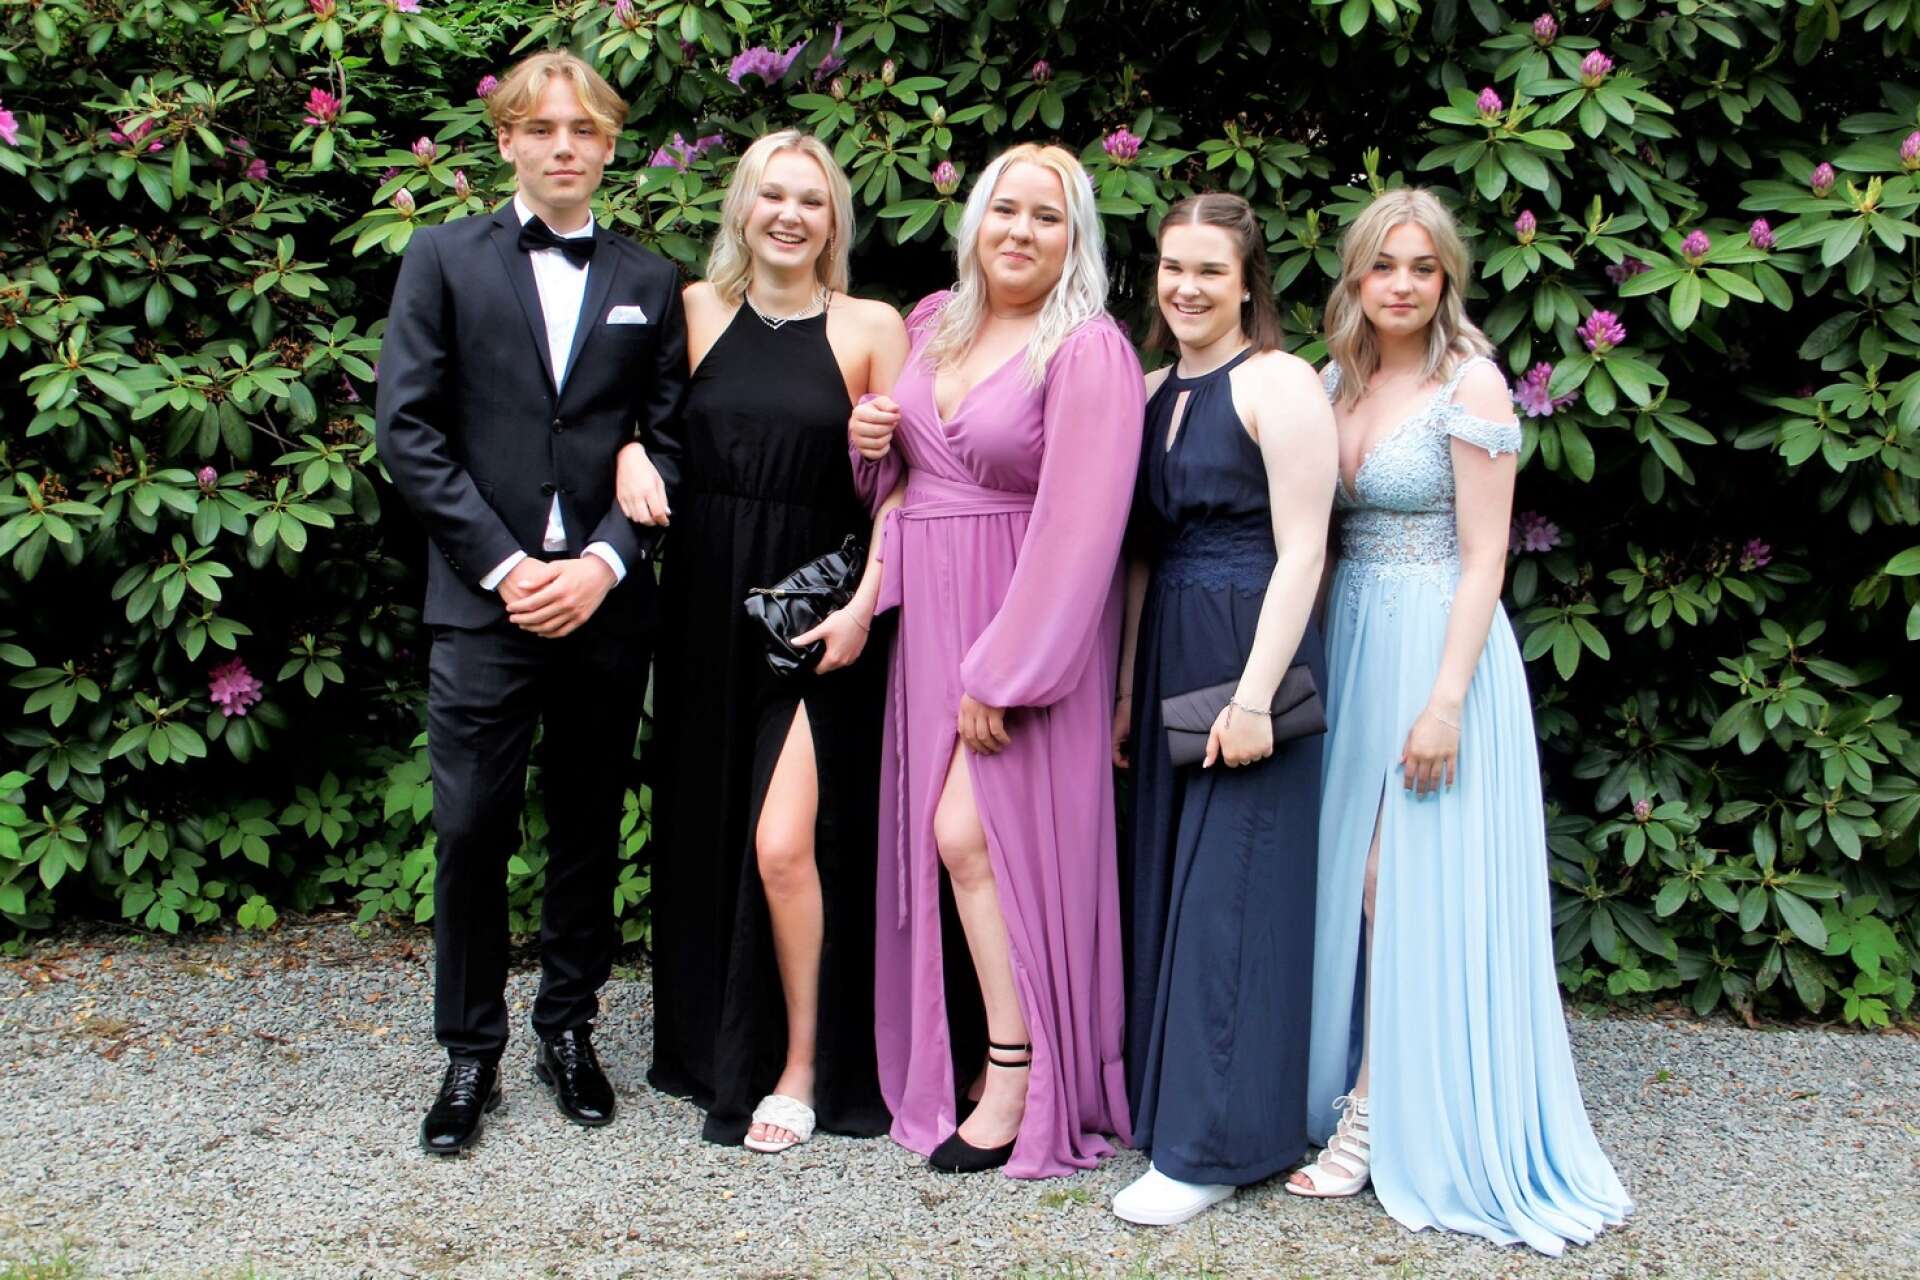 Elisabeth Engkvists klänning gick fint i stil med rhododendronblommornas färg. Hon flankeras av Christoffer Engkvist, Johanna Berg, Hanna Kempe Lundebro och Andrea Pettersson.